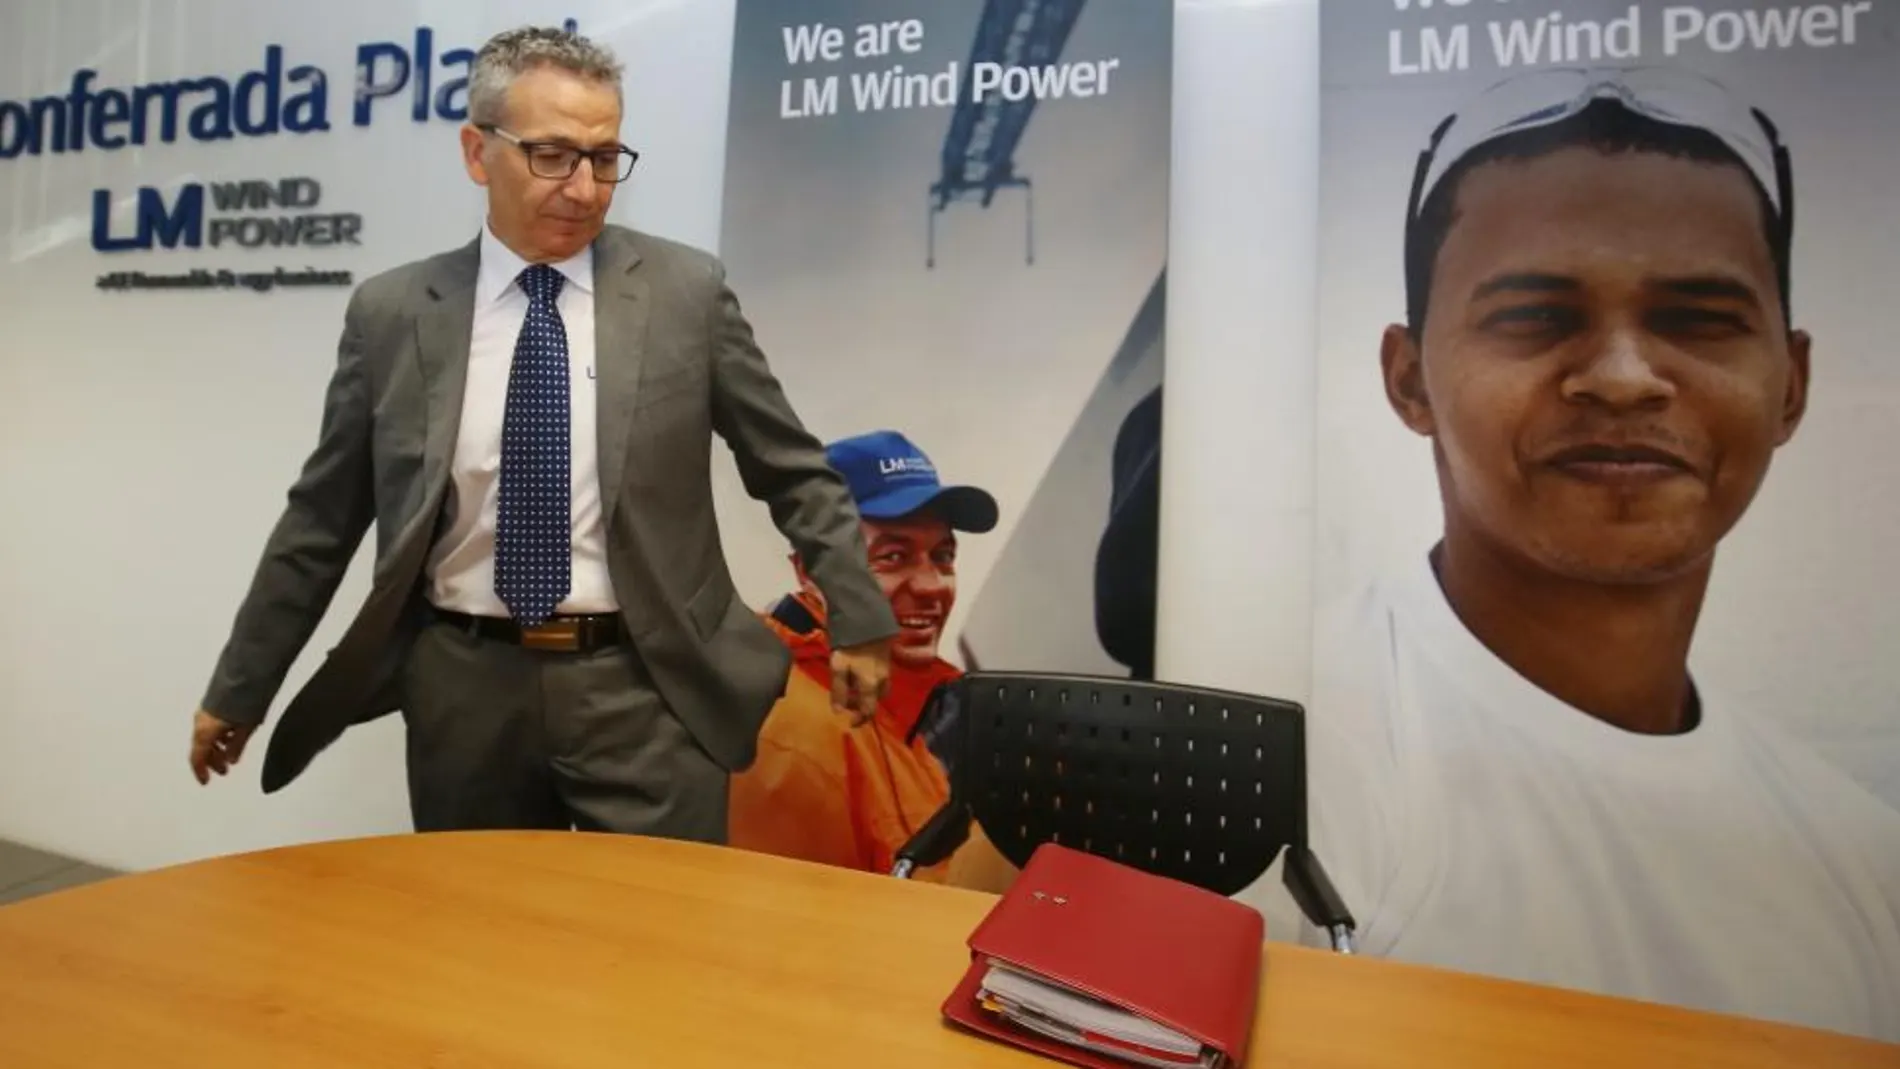 El director de la planta de LM Wind Power en Ponferrada, Francisco Vega, en el momento de hacer el anuncio